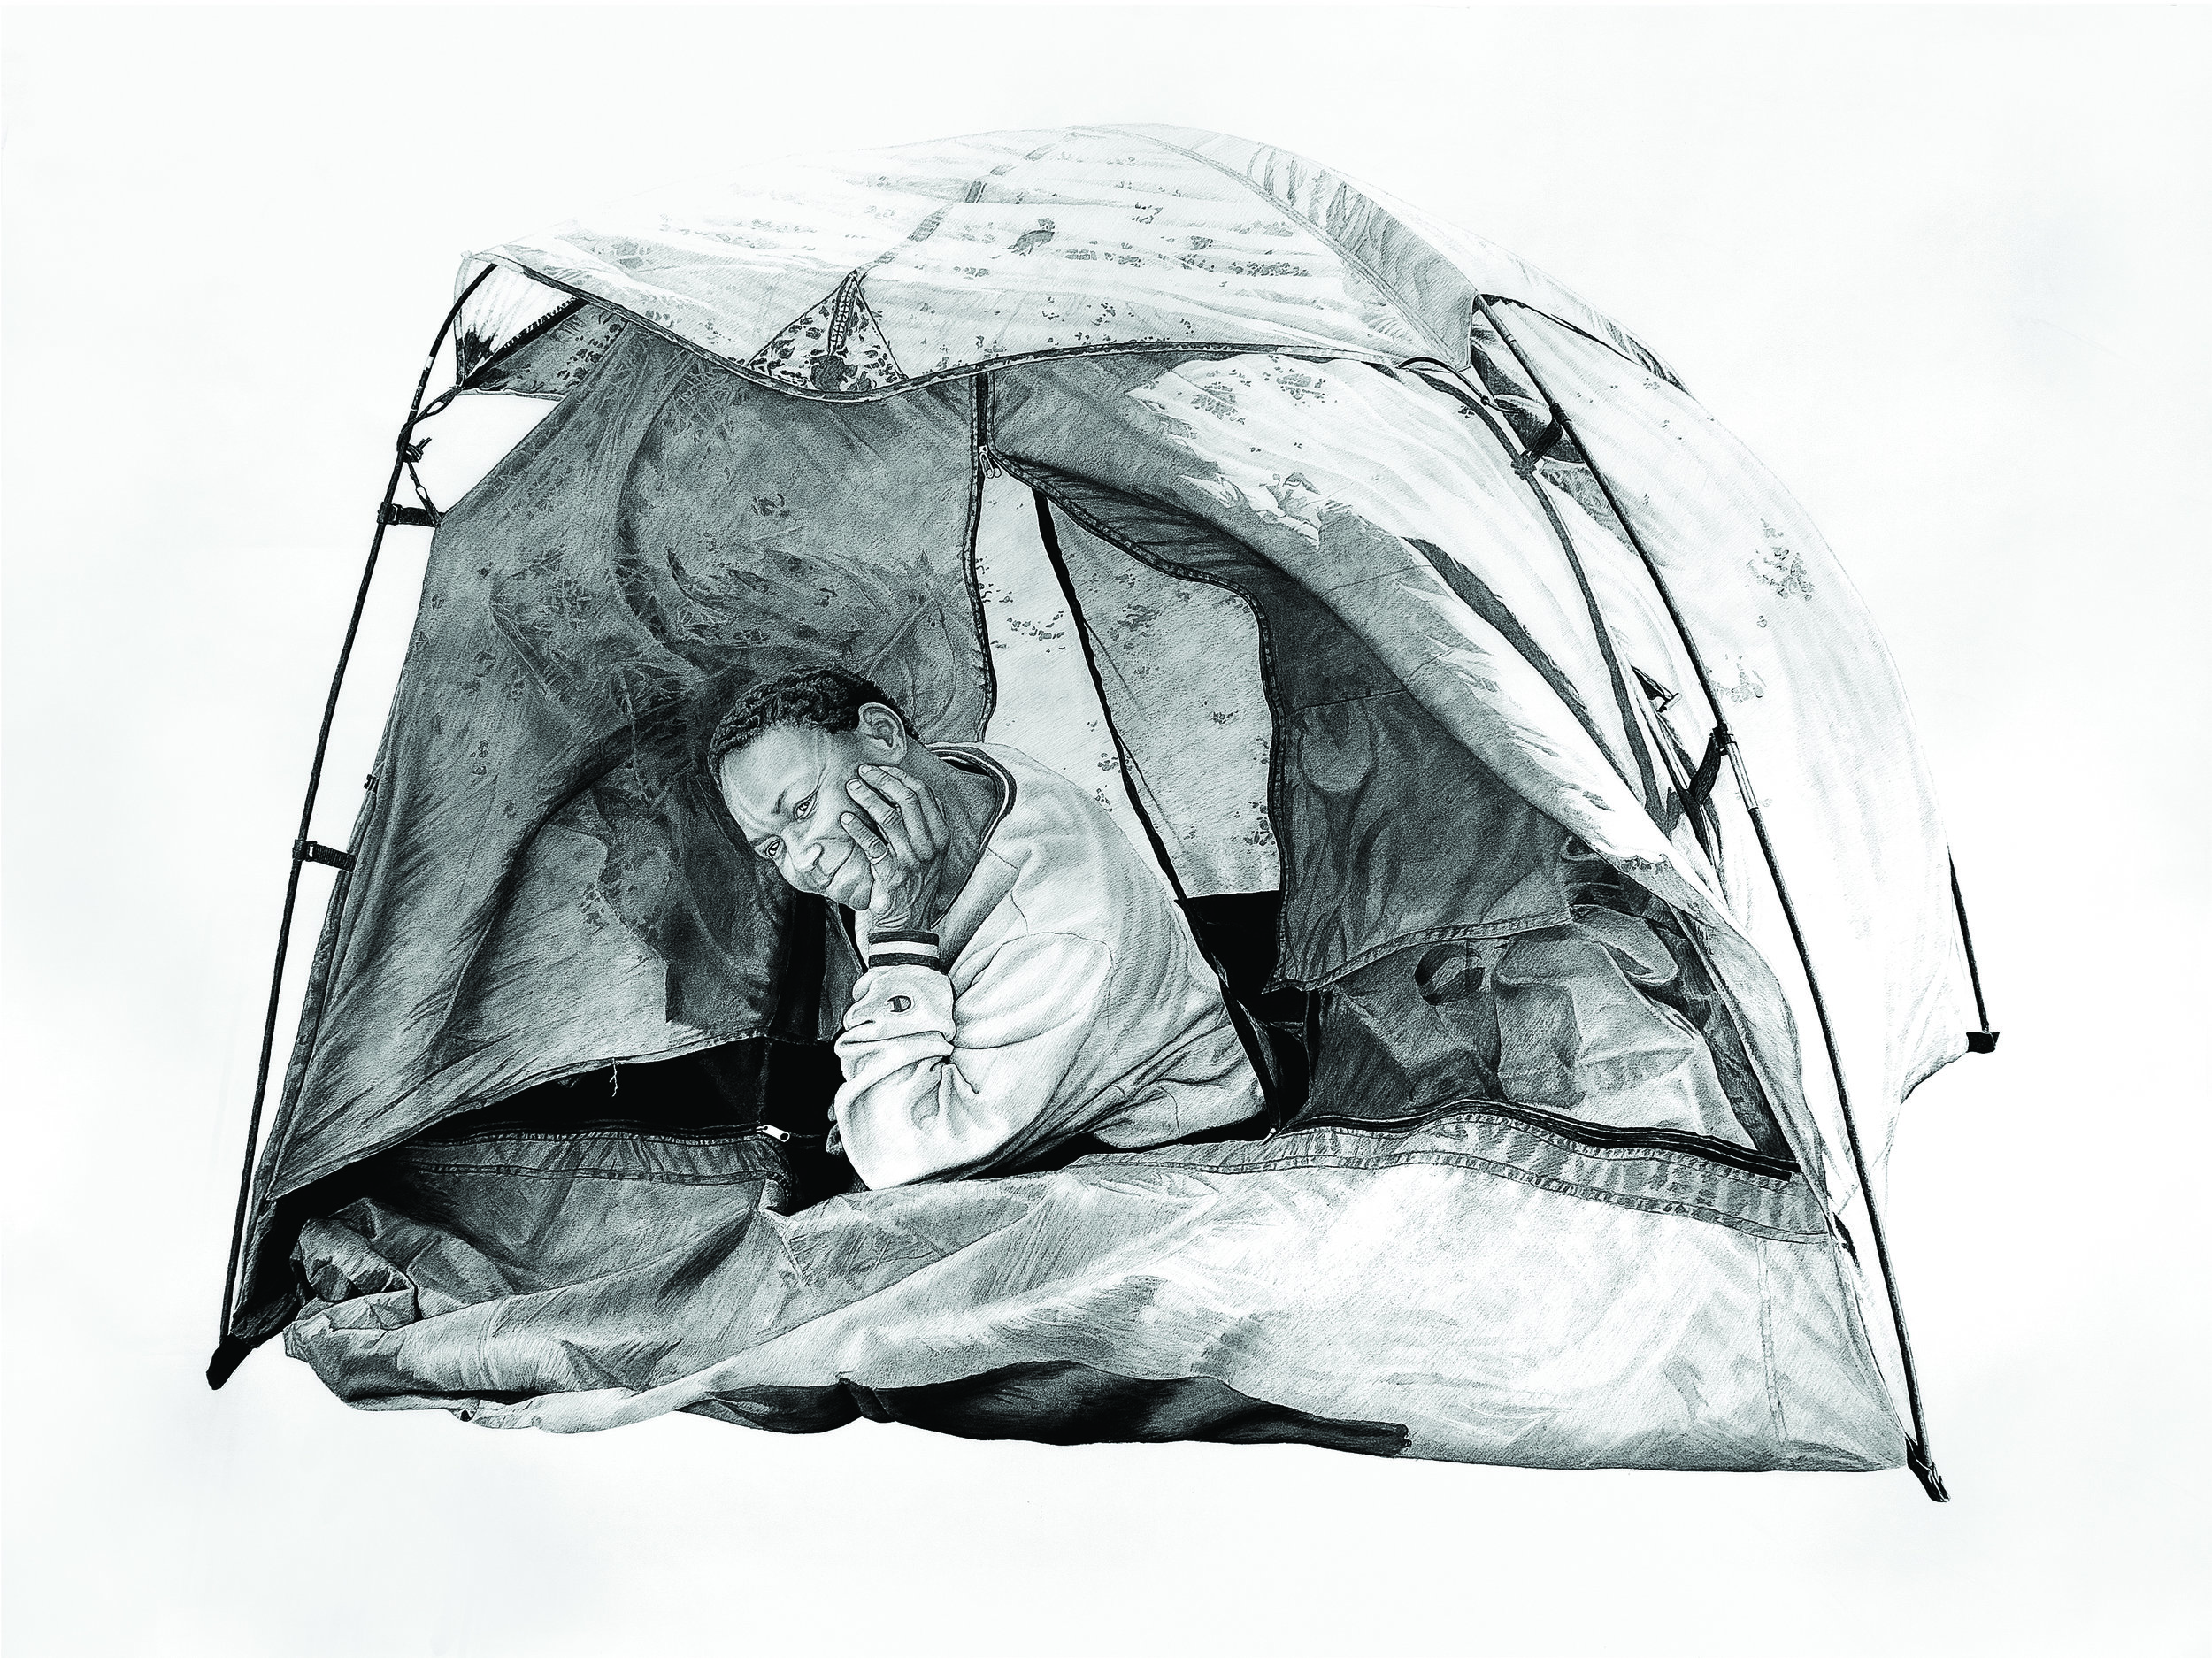 Sam in a Tent